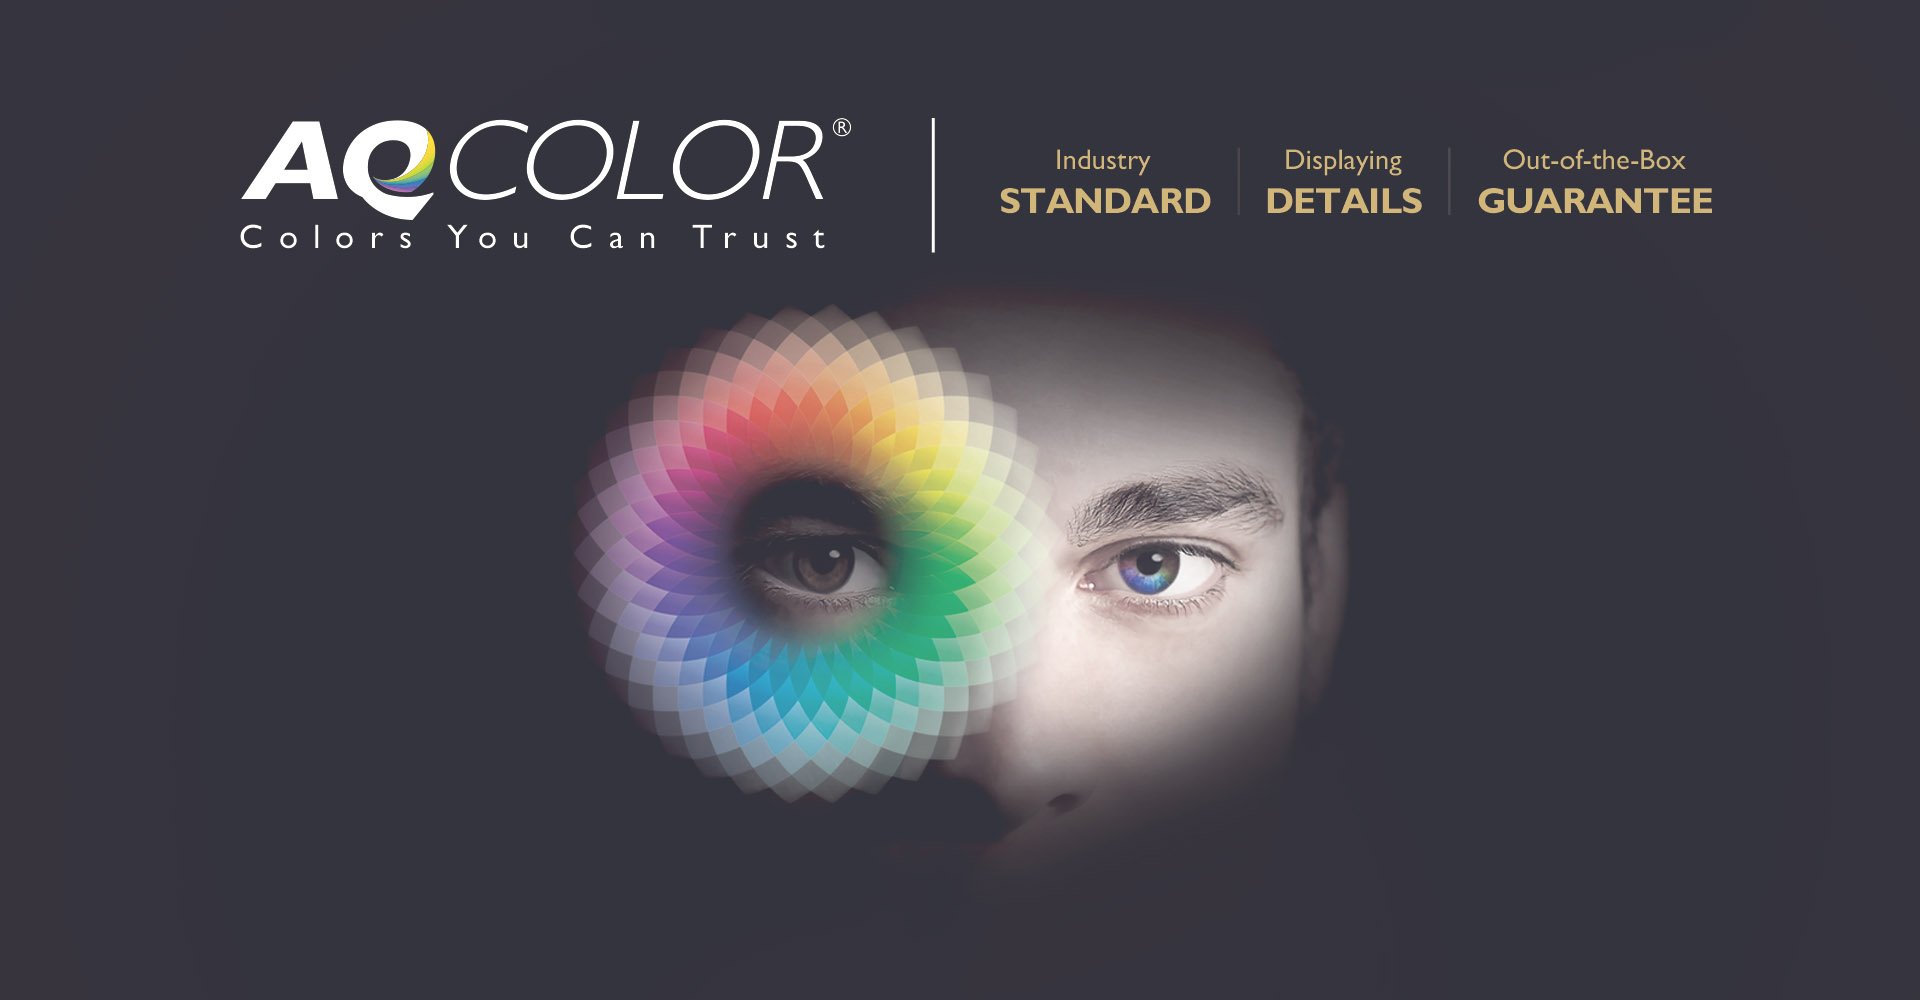 De BenQ AQCOLOR technologie creëert nieuwe dimensies in foto- en videobewerking en maximale kleurprecisie voor levensechte kleuren.